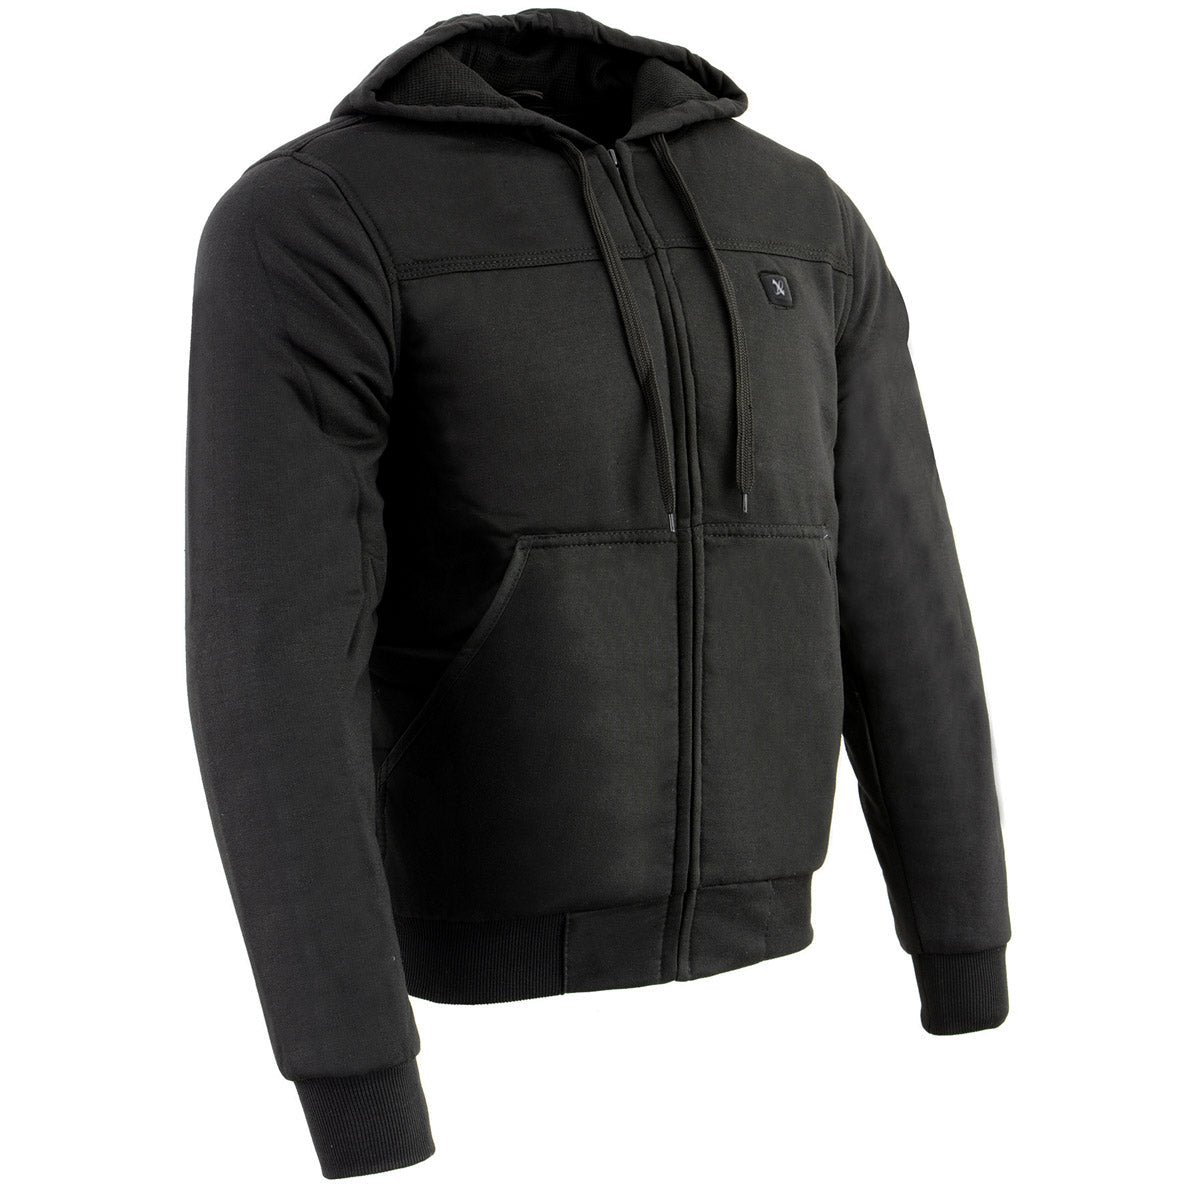 Nexgen Heat MPM1713 Men's Black 'Fiery' Heated Hoodies - Front Zipper Textile Heated Jacket for Winter w/Battery Pack